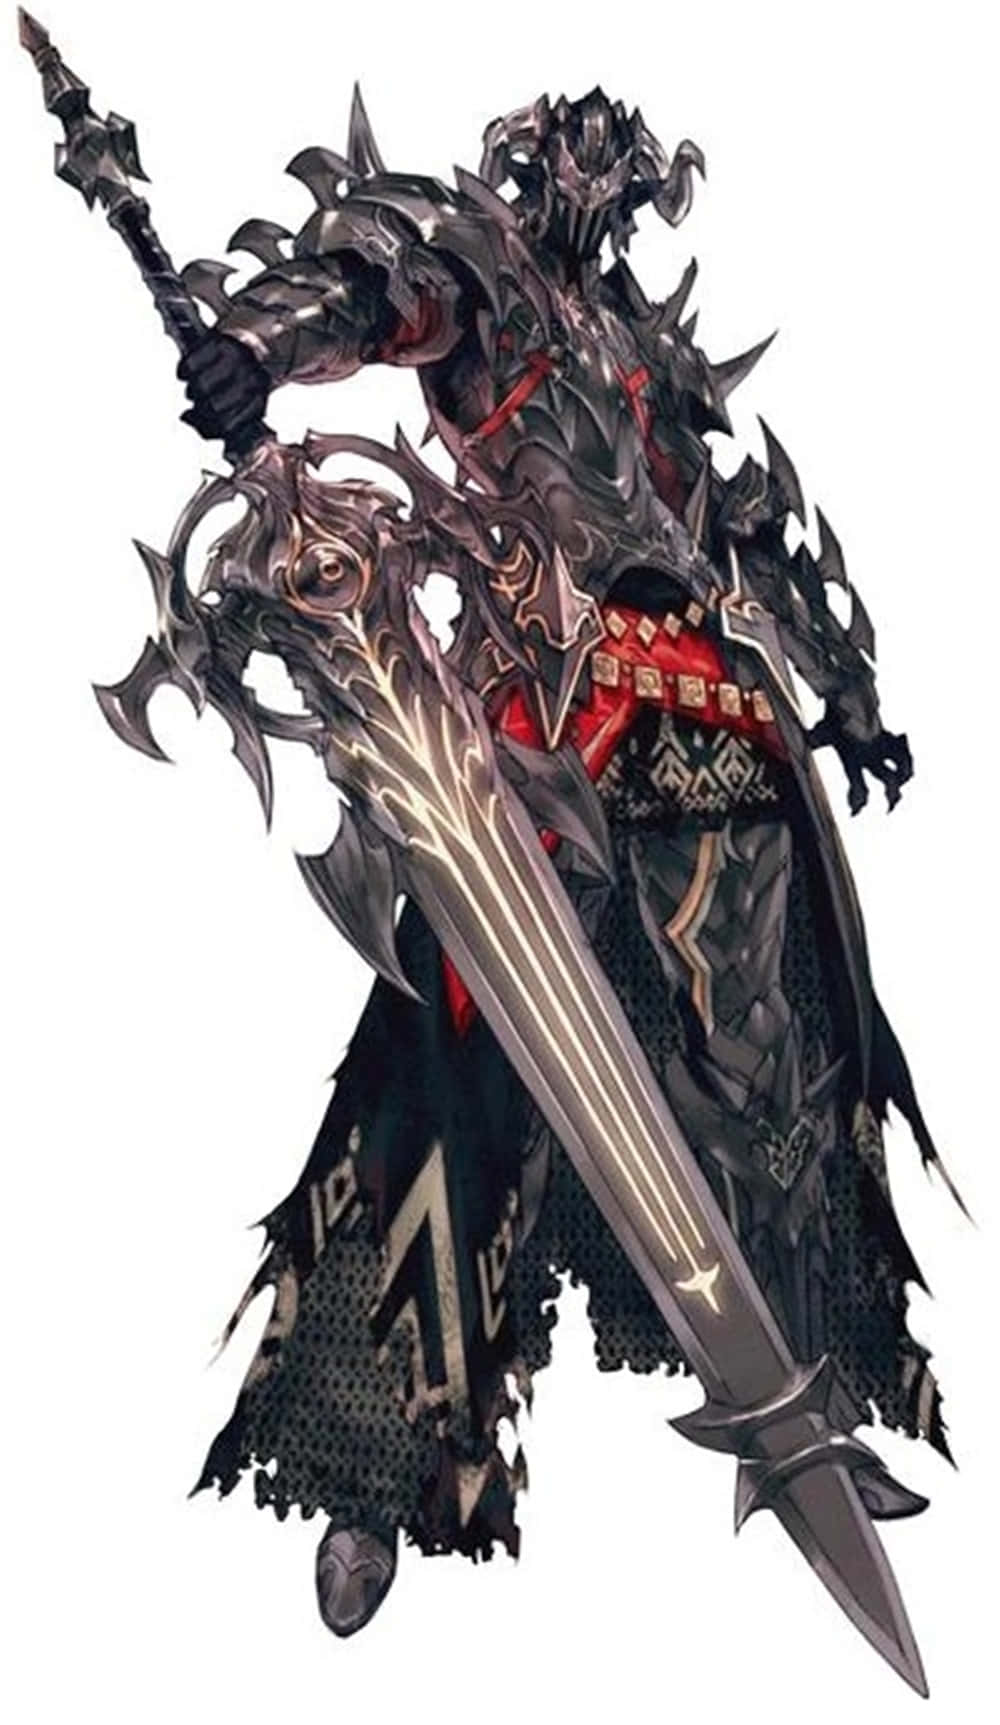 Fierce Dark Knight From Final Fantasy Xiv Wallpaper